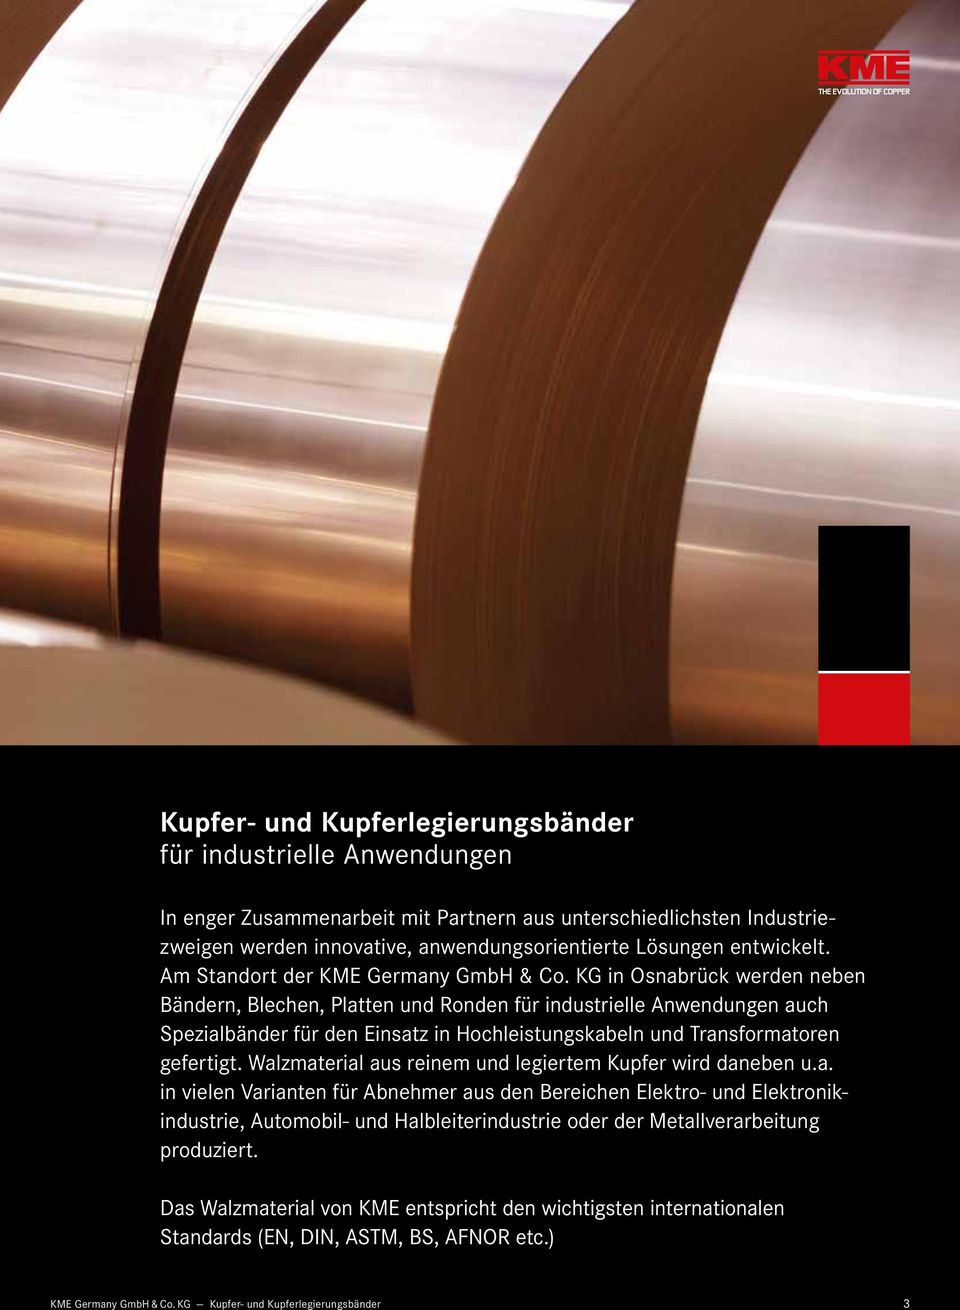 KG in Osnabrück werden neben Bändern, Blechen, Platten und Ronden für industrielle Anwendungen auch Spezialbänder für den Einsatz in Hochleistungskabeln und Transformatoren gefertigt.